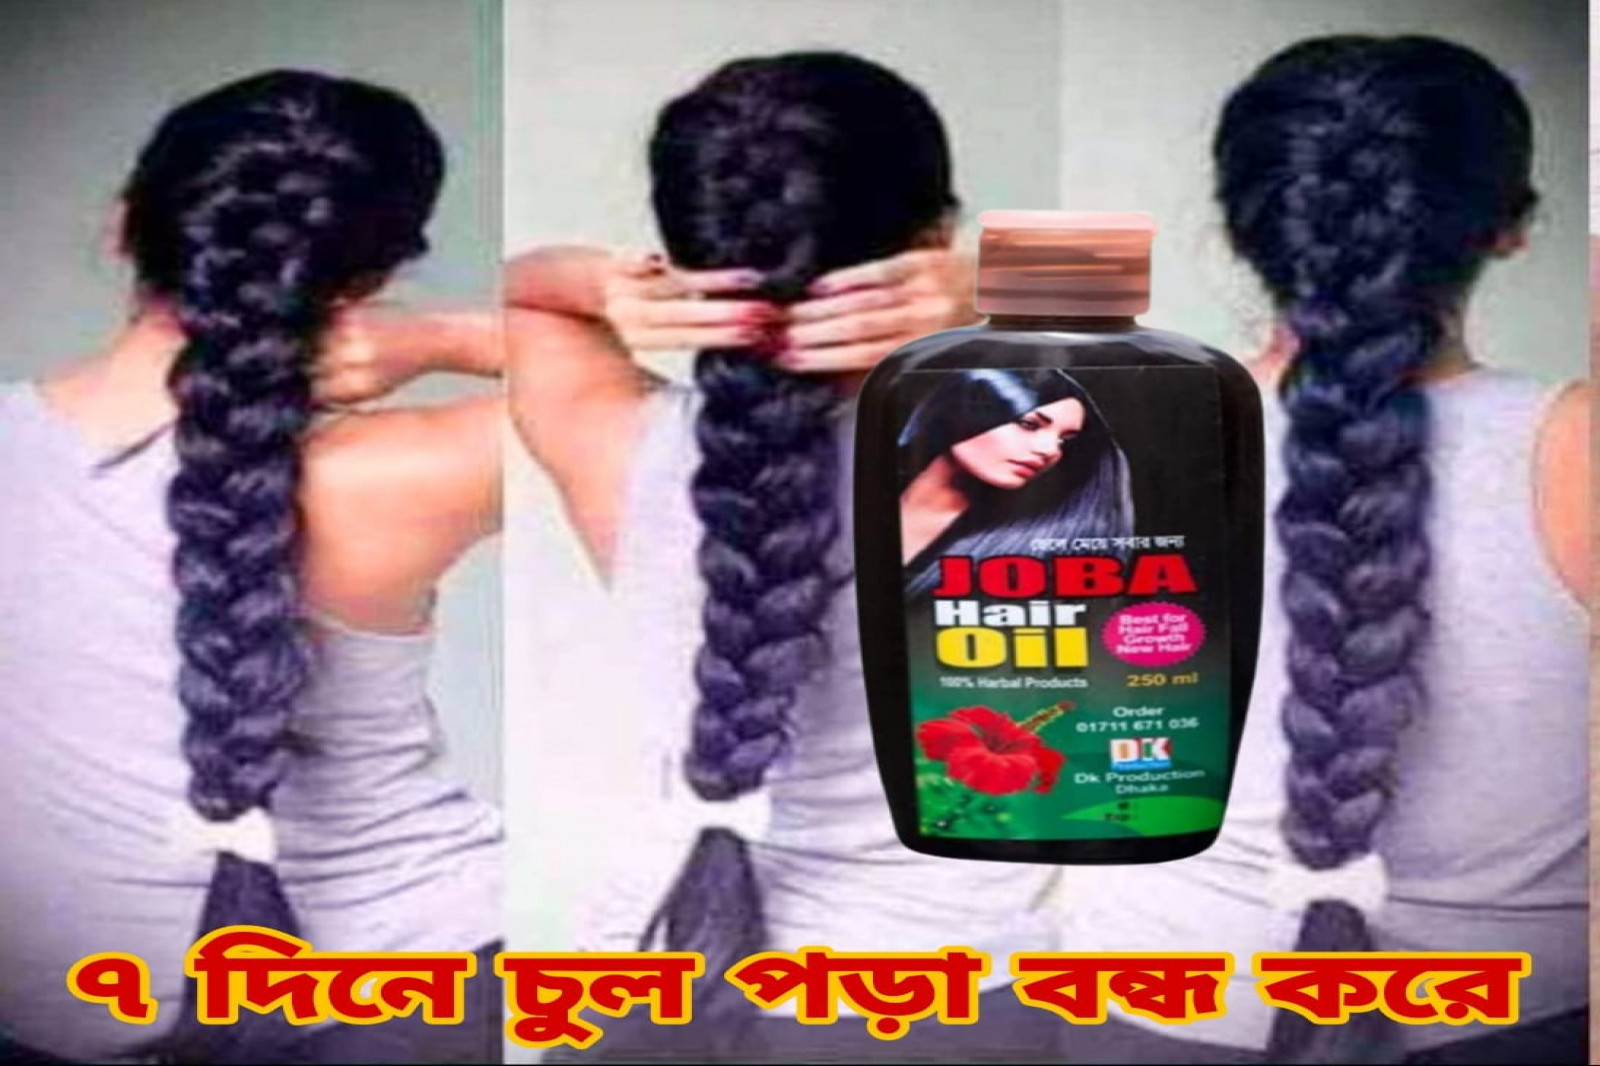 Joba Hair Oil